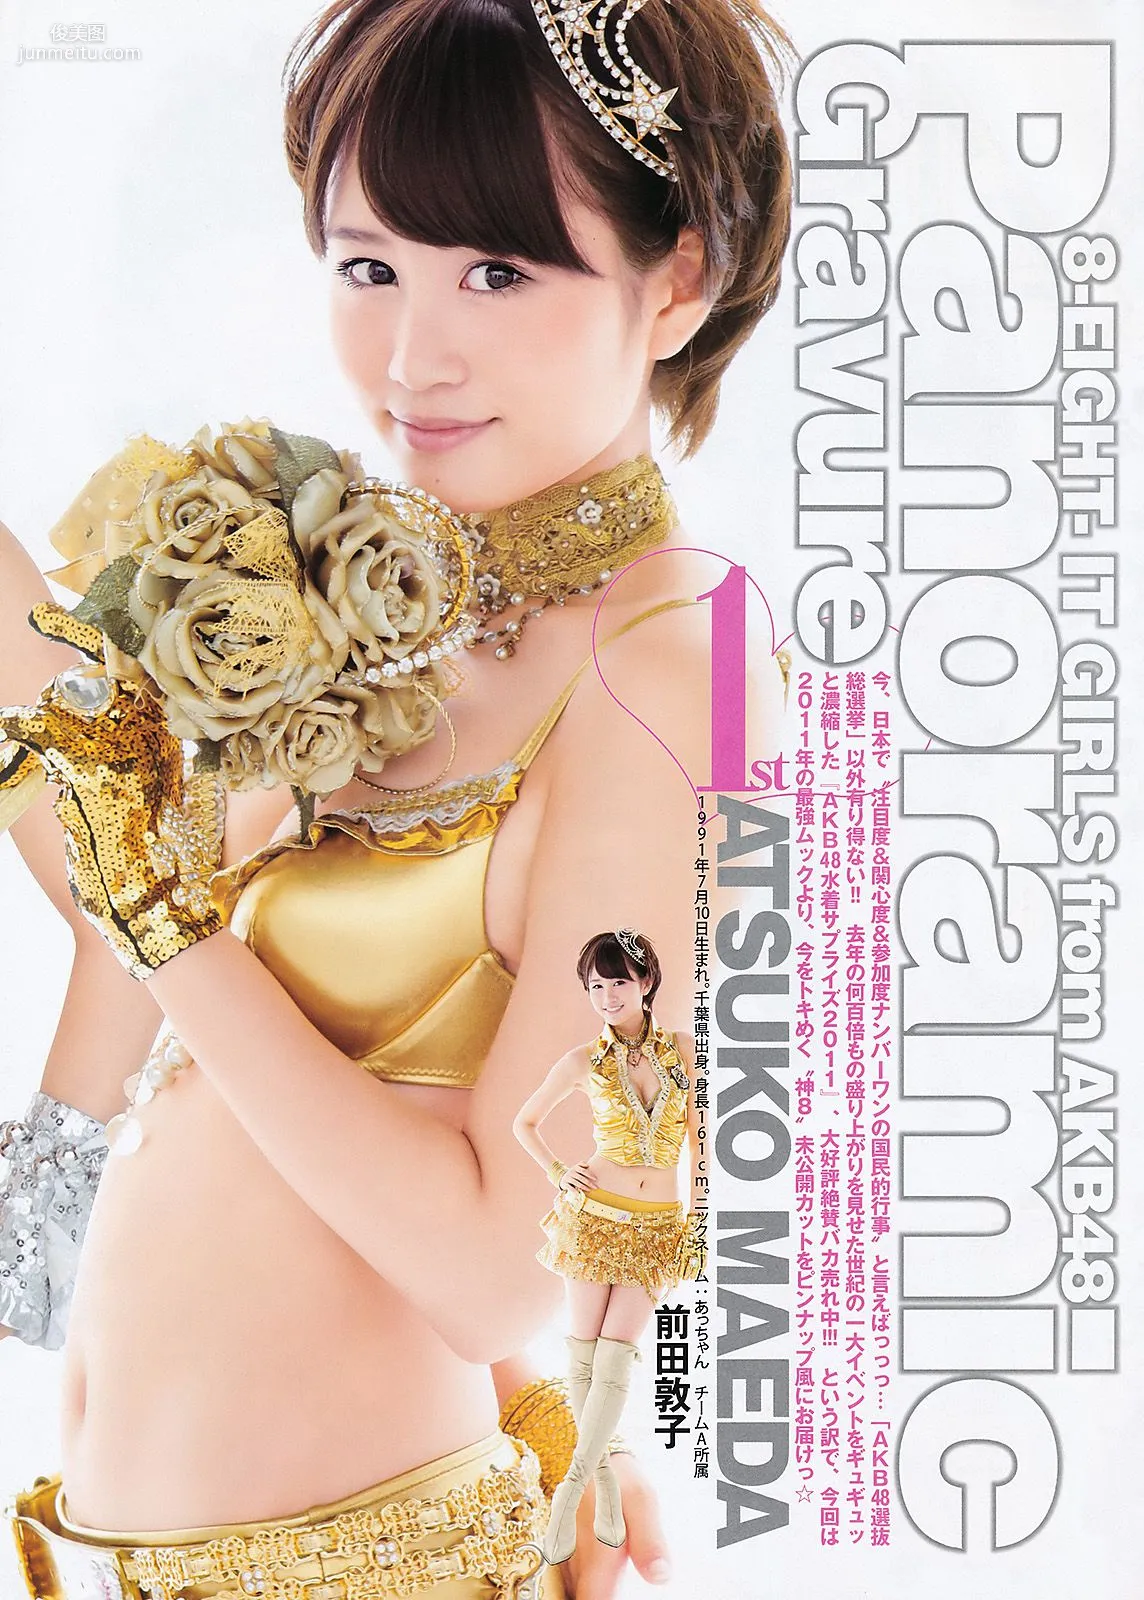 柏木由纪 AKB48 [Weekly Young Jump] 2011年No.38 写真杂志9